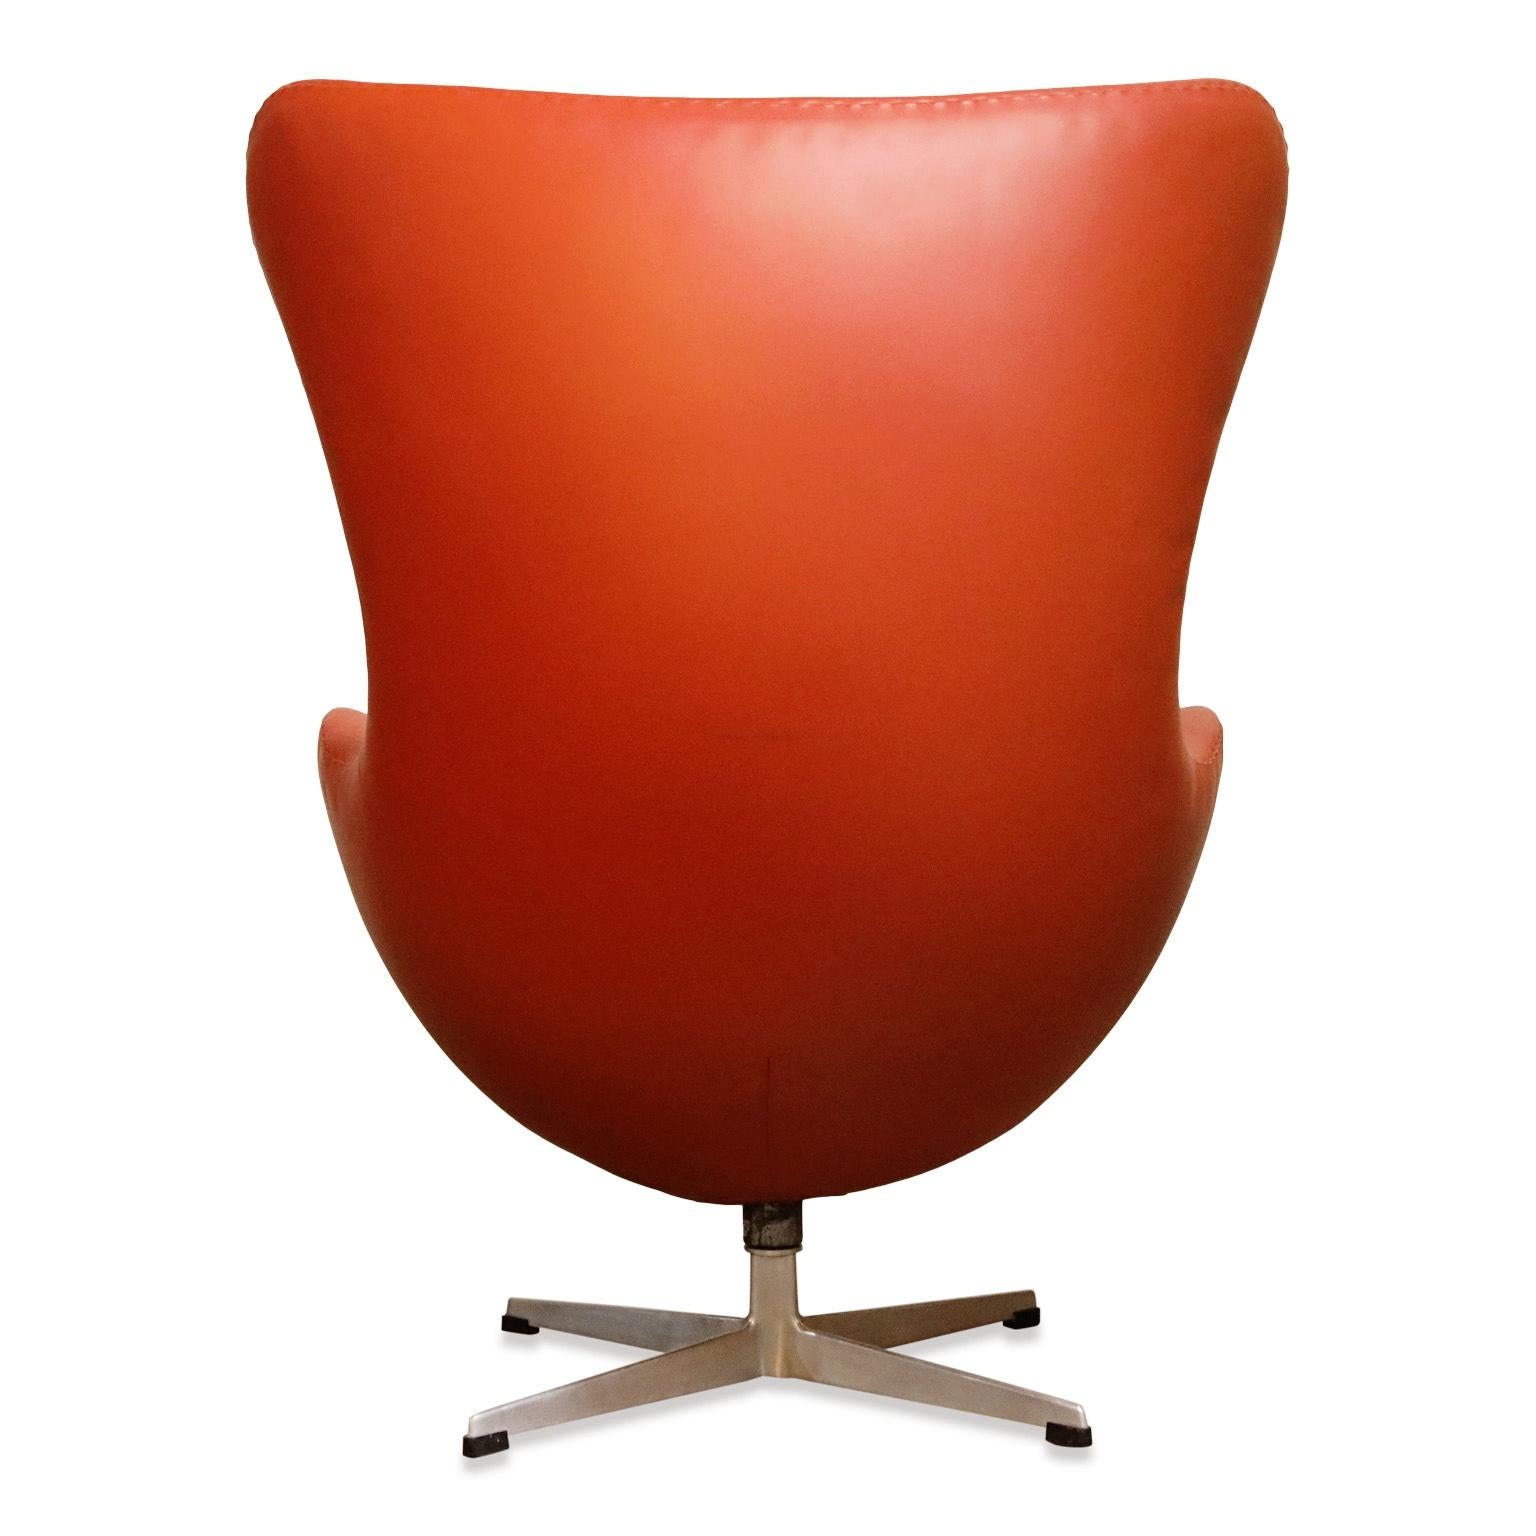 Mid-Century Modern Egg Chair in Burnt Orange Leather, Arne Jacobsen for Fritz Hansen, Signed 1963